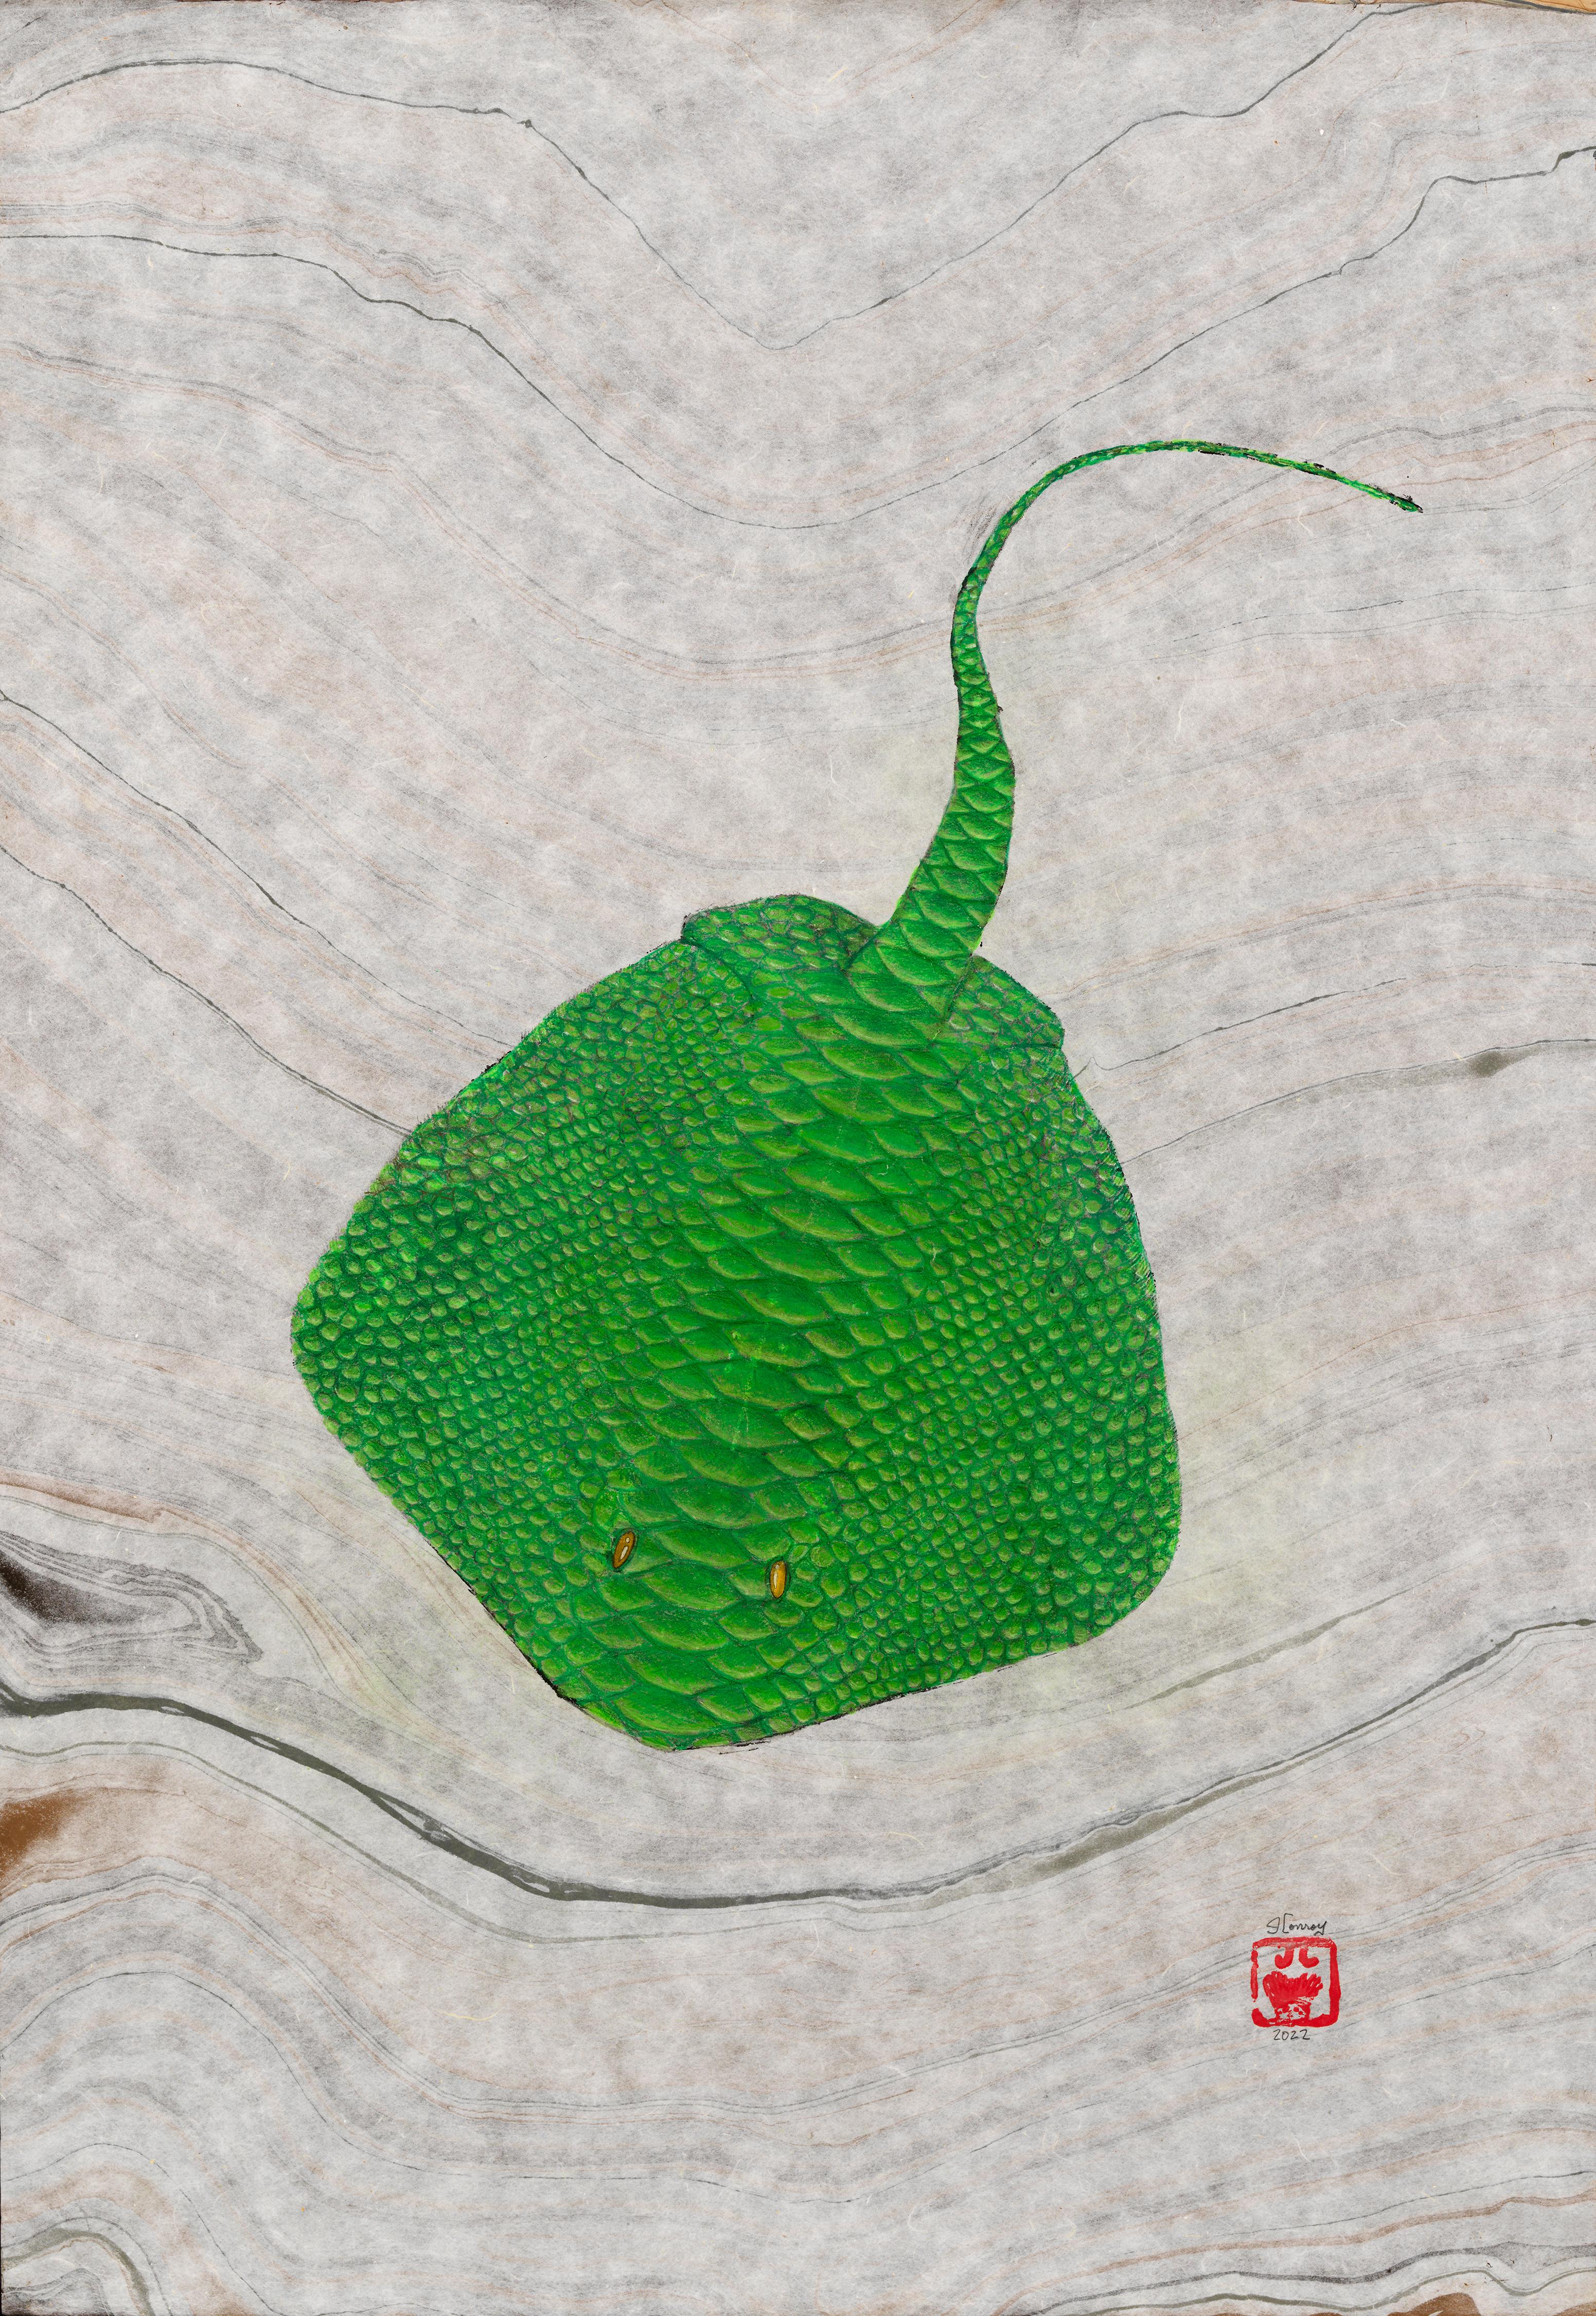 Sleestak Ray – Gyotaku-Stil Druck eines Sting Ray, verschönert mit hellen Grüntönen